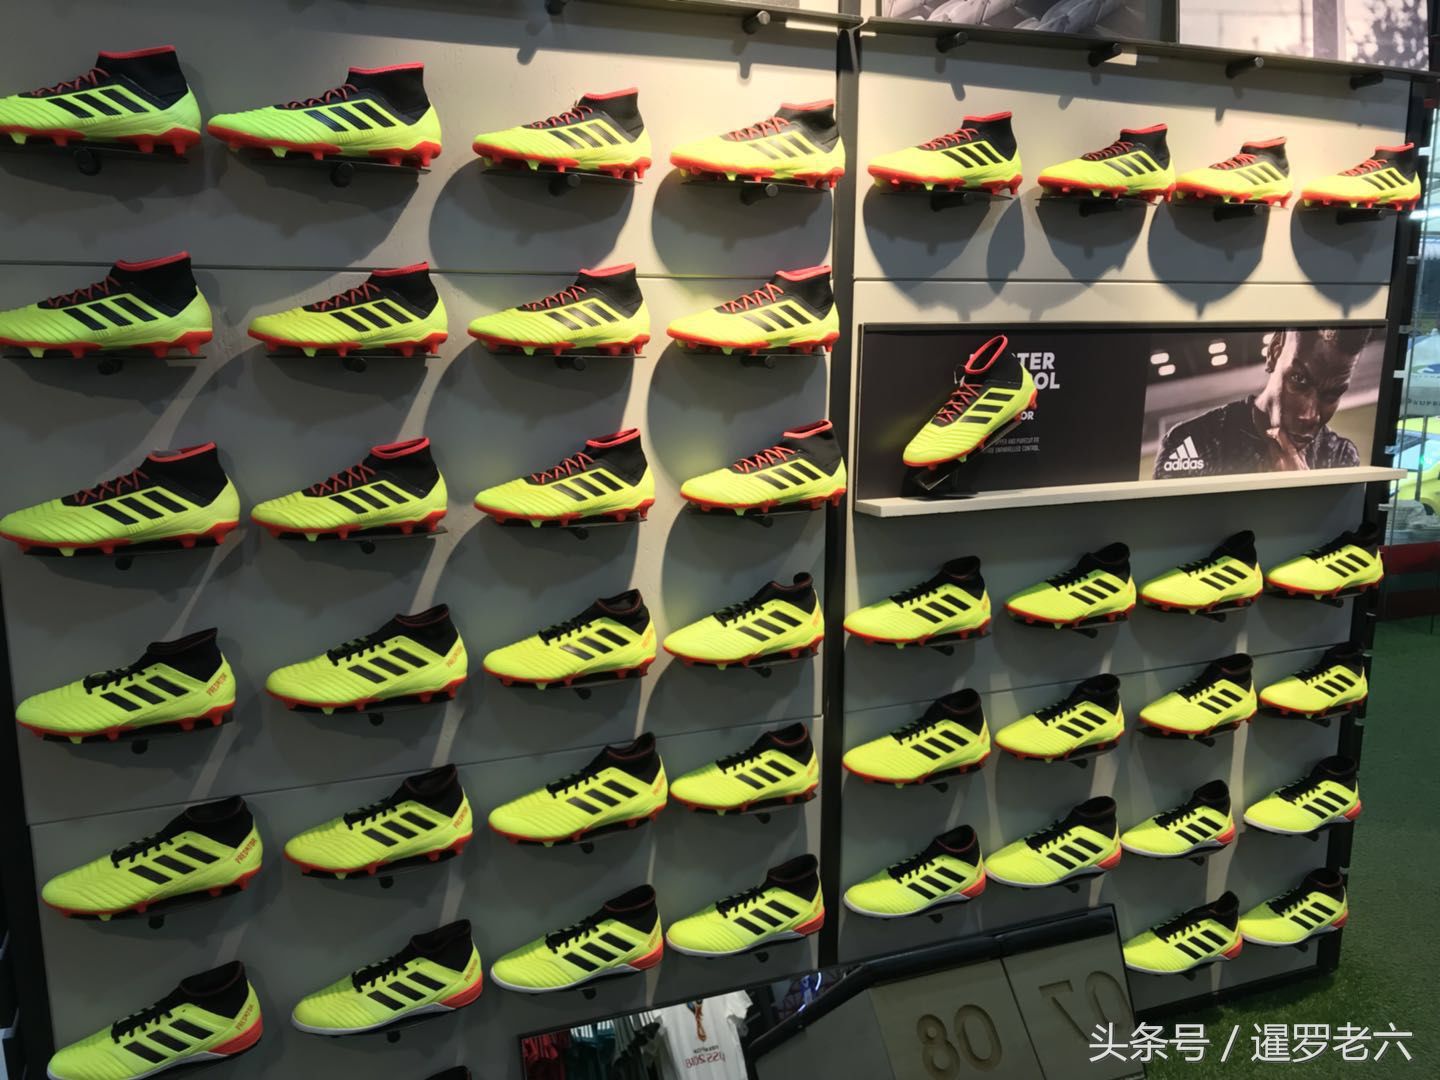 阿迪达斯顶级款球鞋,在泰国挺受欢迎!博格巴、